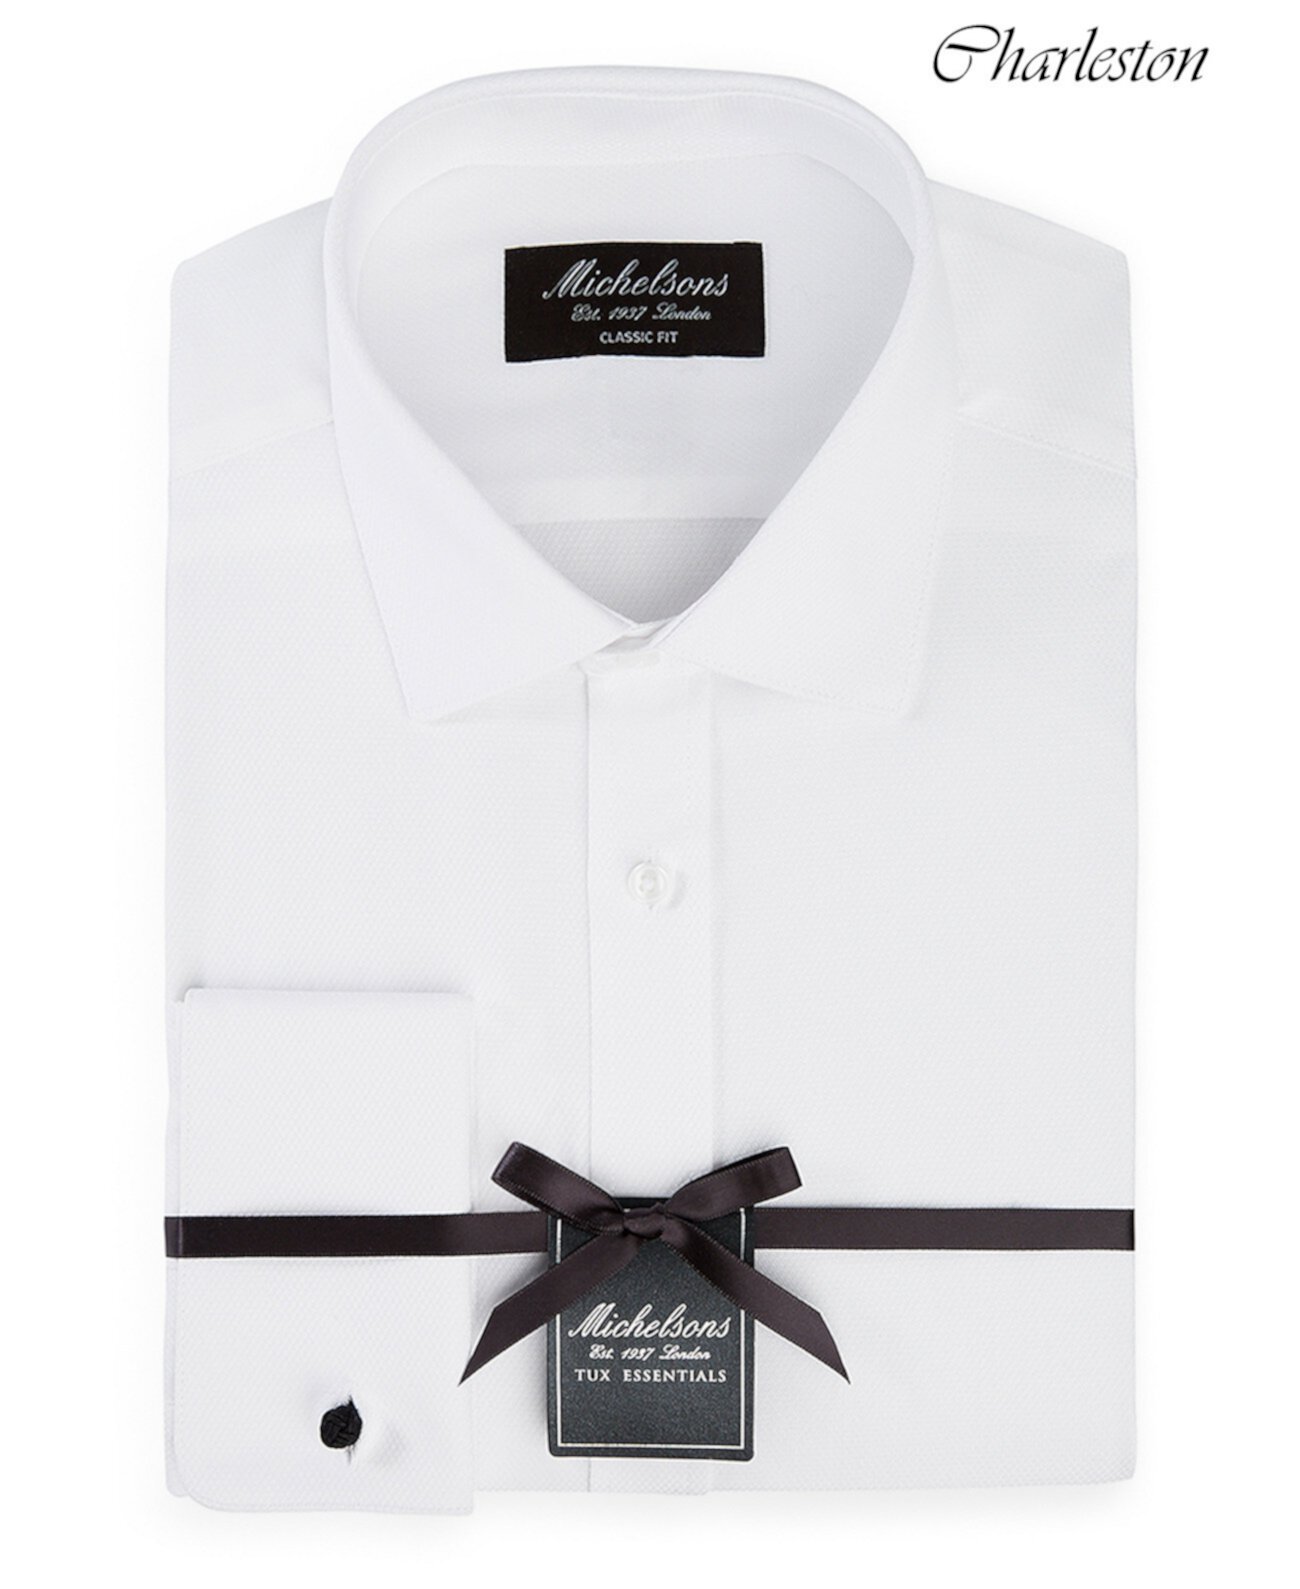 of London Мужская классическая / классическая рубашка в твердом стиле с французскими манжетами MICHELSONS OF LONDON